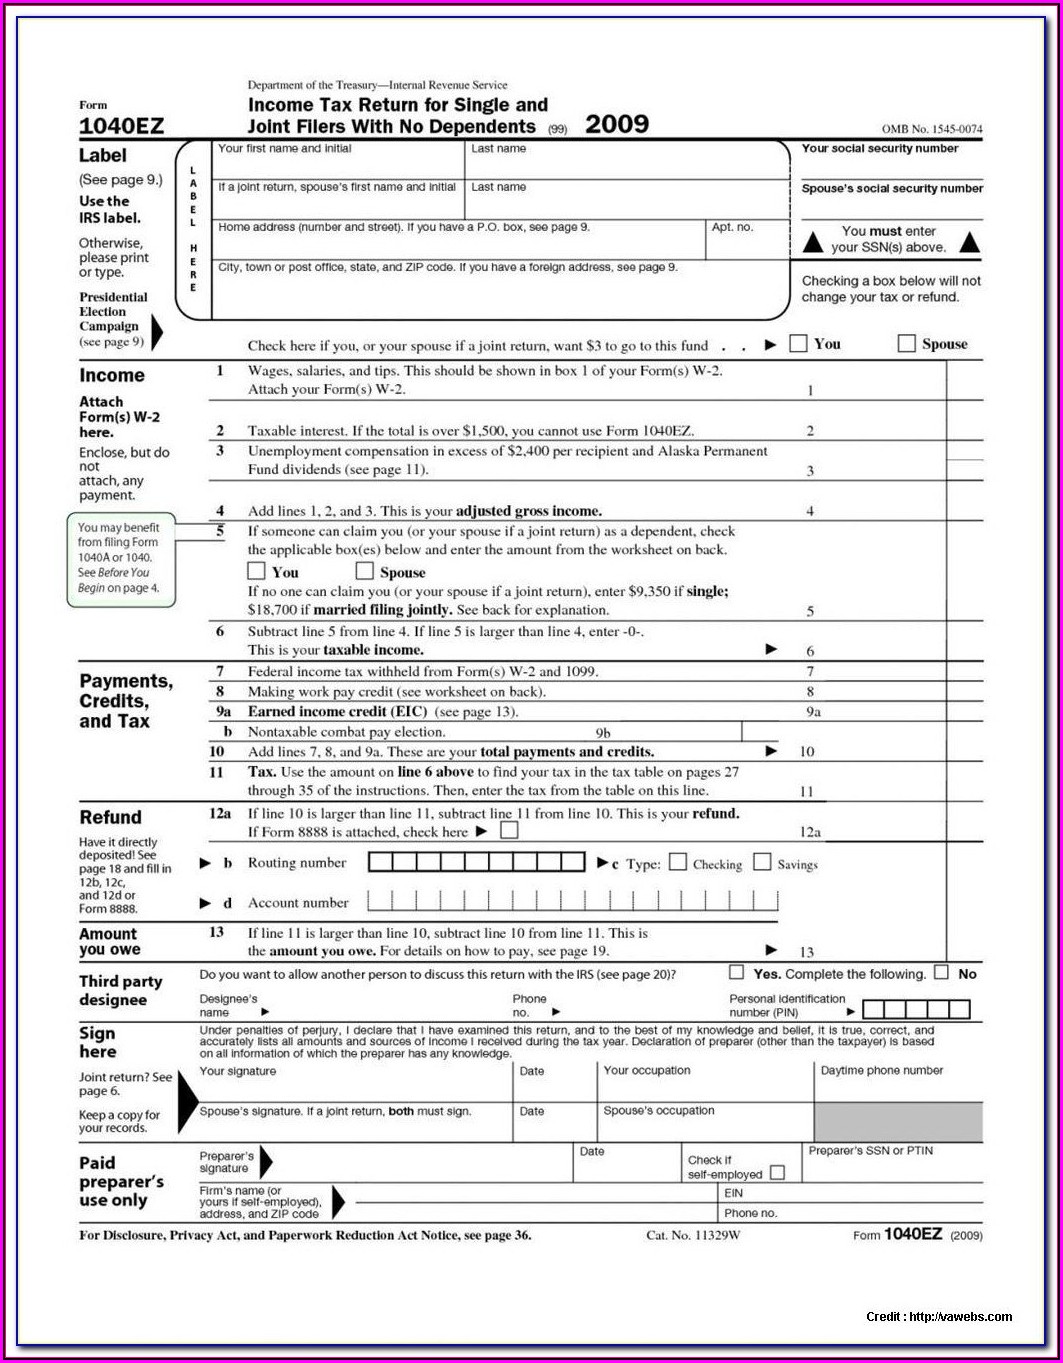 Irs.gov 2014 Tax Form 1040a